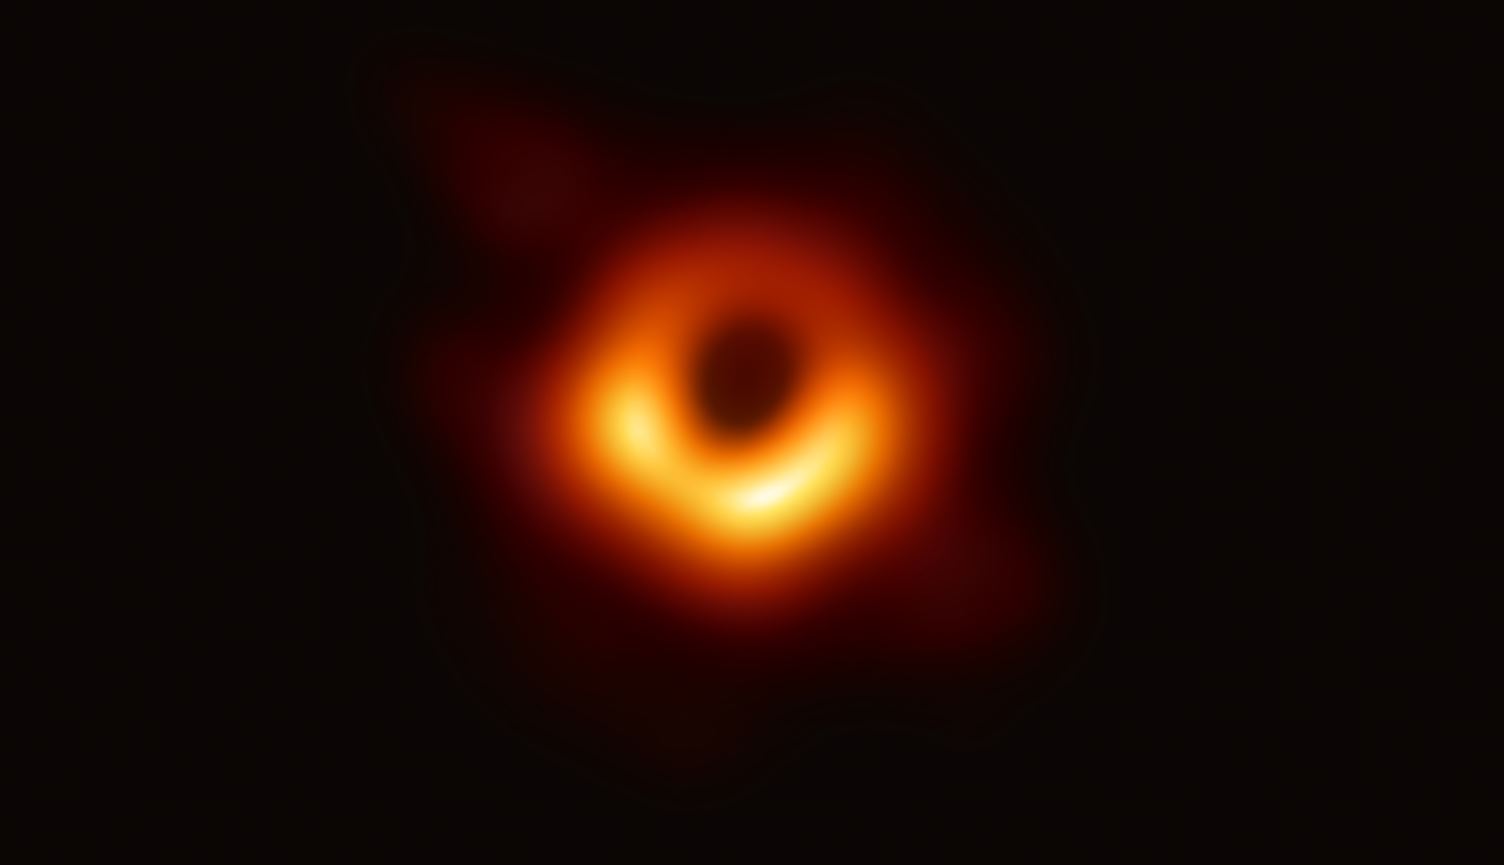 Agujero negro situado en el centro de la galaxia M87, rodeado por una emisión de gas caliente arremolinándose a su alrededor bajo la influencia de una fuerte gravedad bajo su horizonte de sucesos. Imagen: EHT.